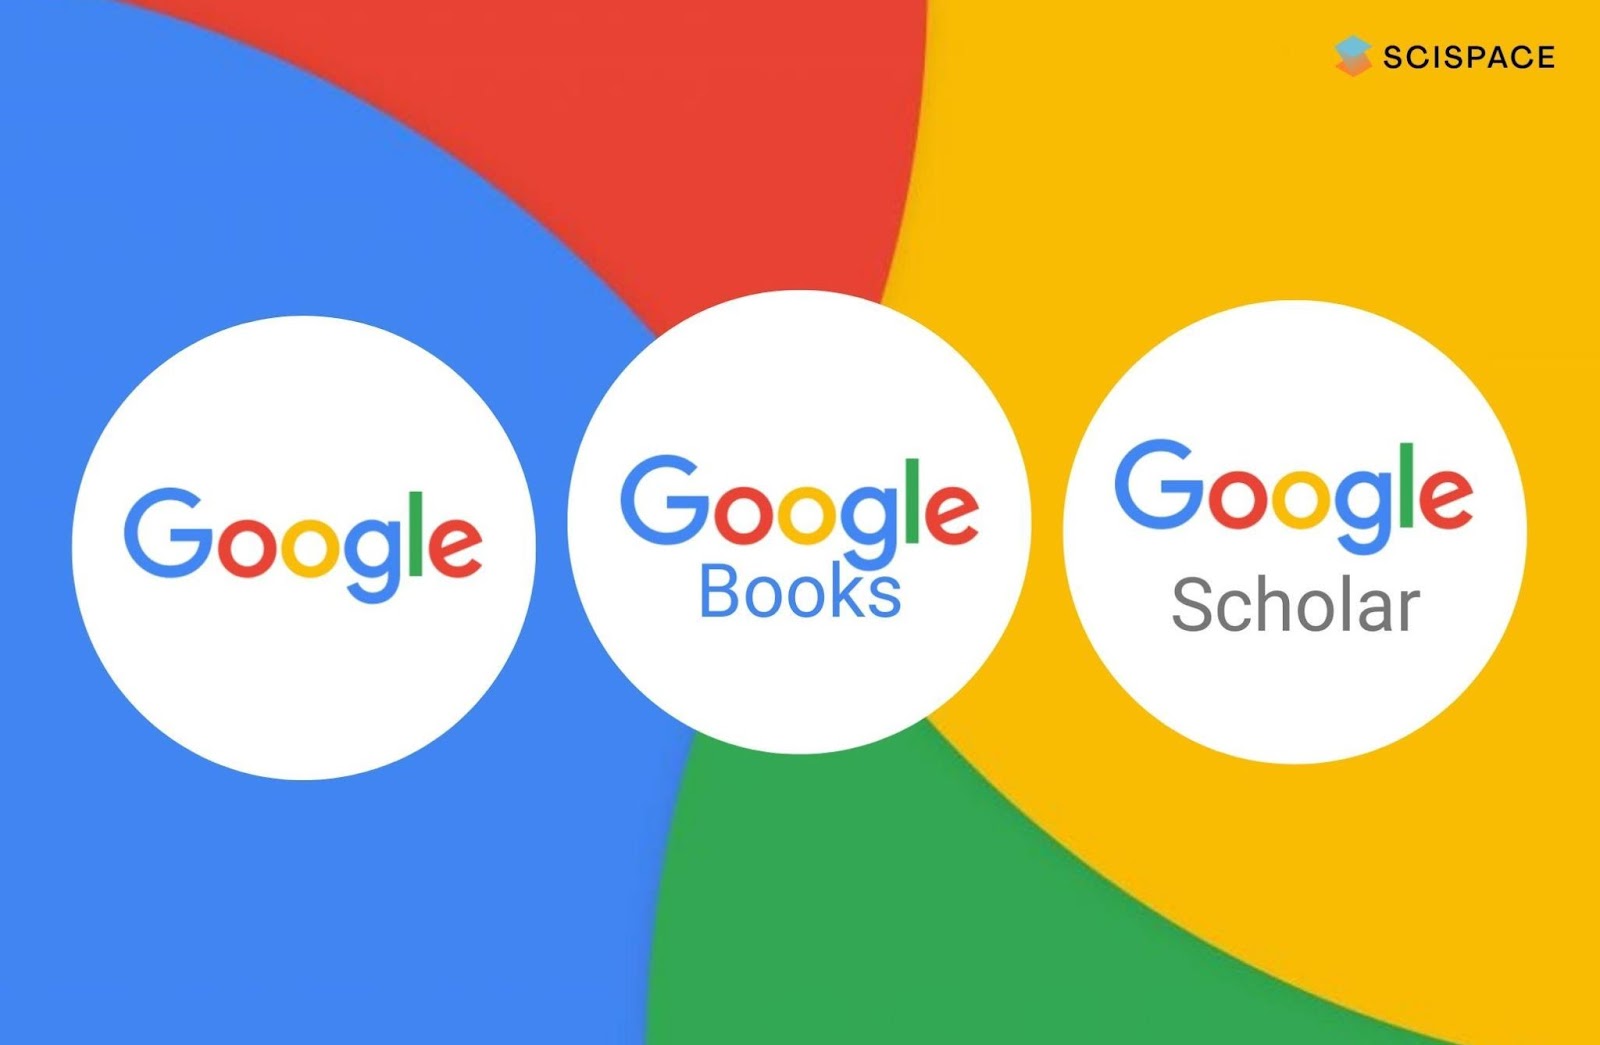 google-versus-google-books-versus-google-scholar